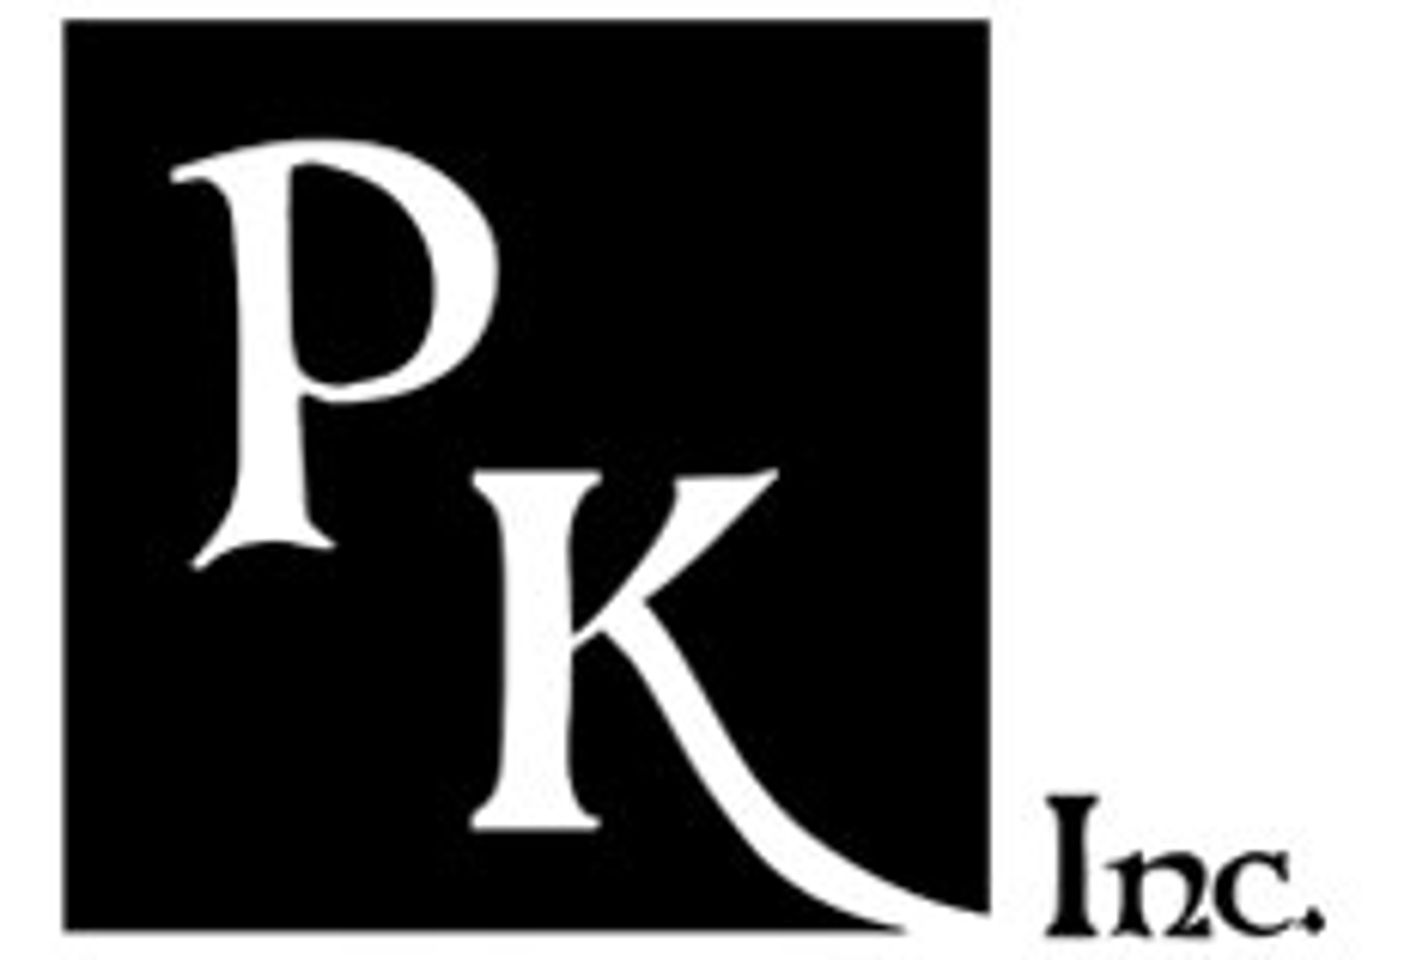 Peekay Inc. Nominated for 2 XBIZ Awards